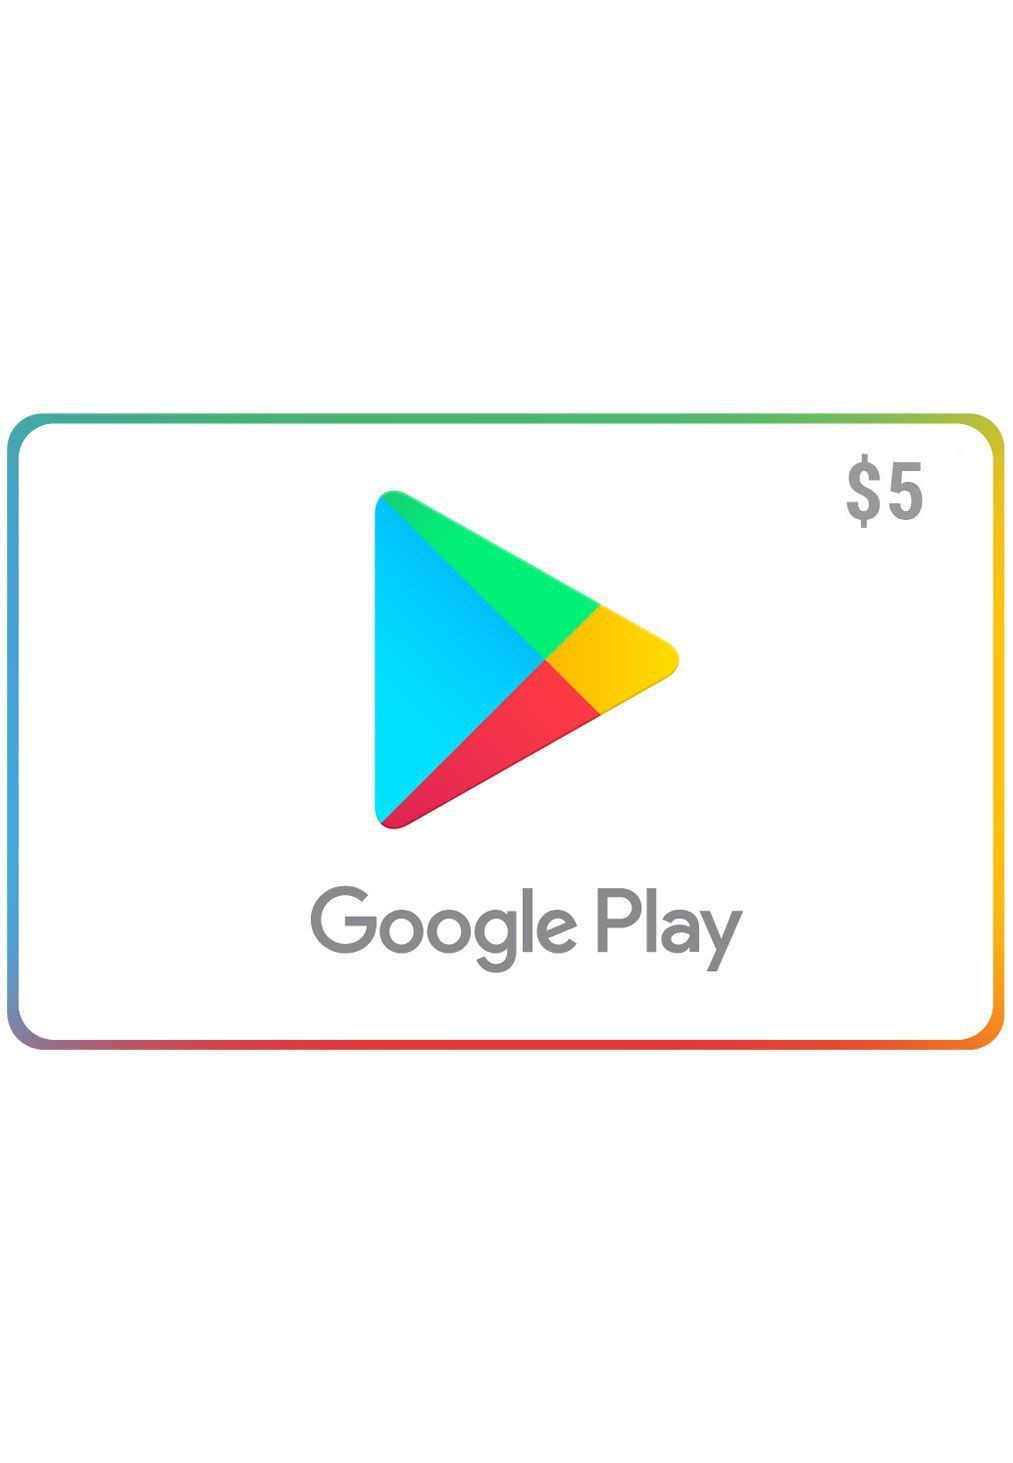 como comprar coins em jogo que está em dolar usando gift card? - Comunidade Google  Play